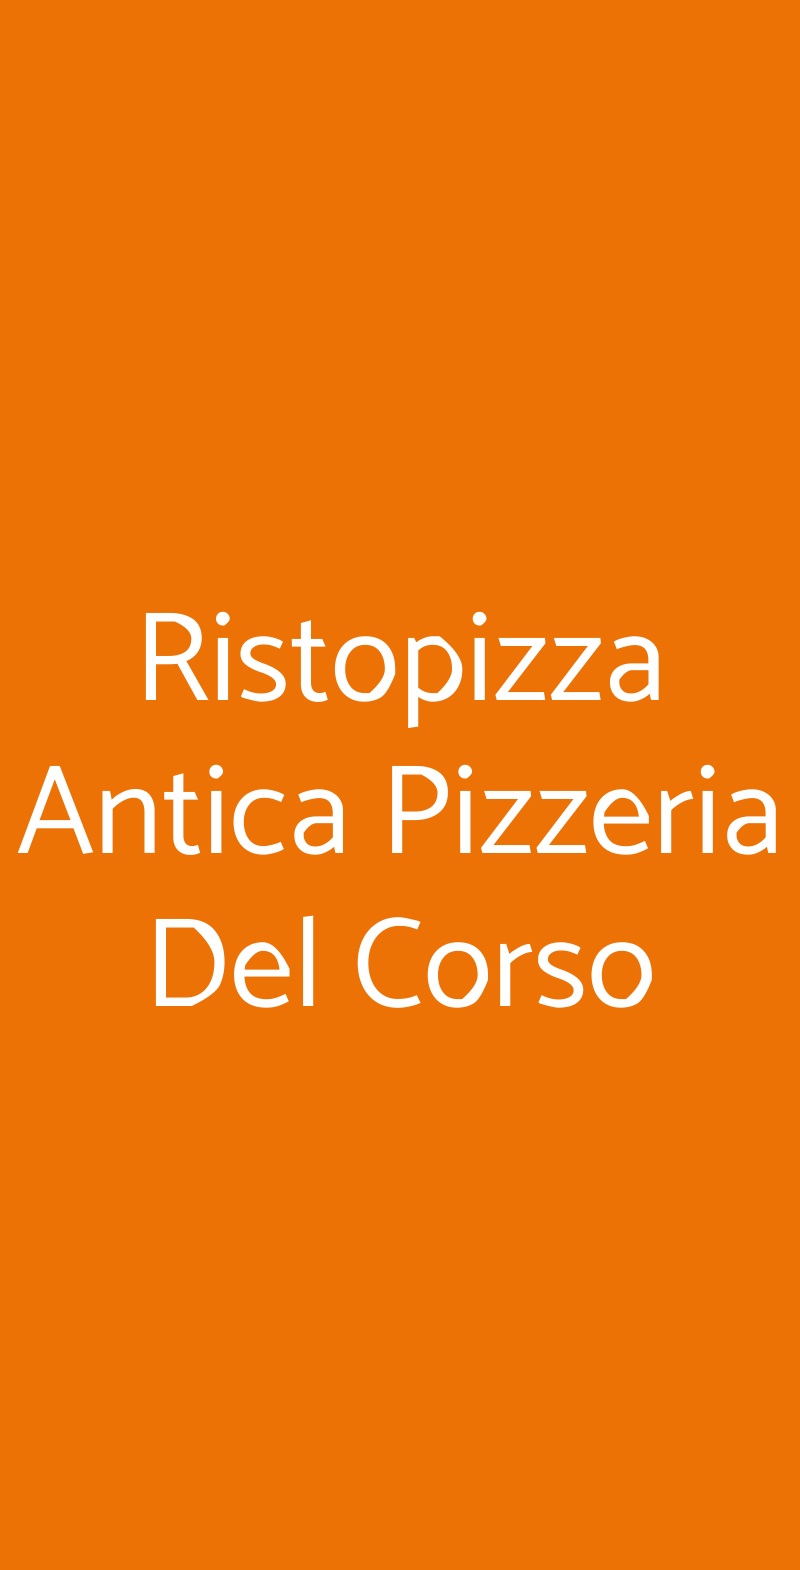 Ristopizza Antica Pizzeria Del Corso Barletta menù 1 pagina